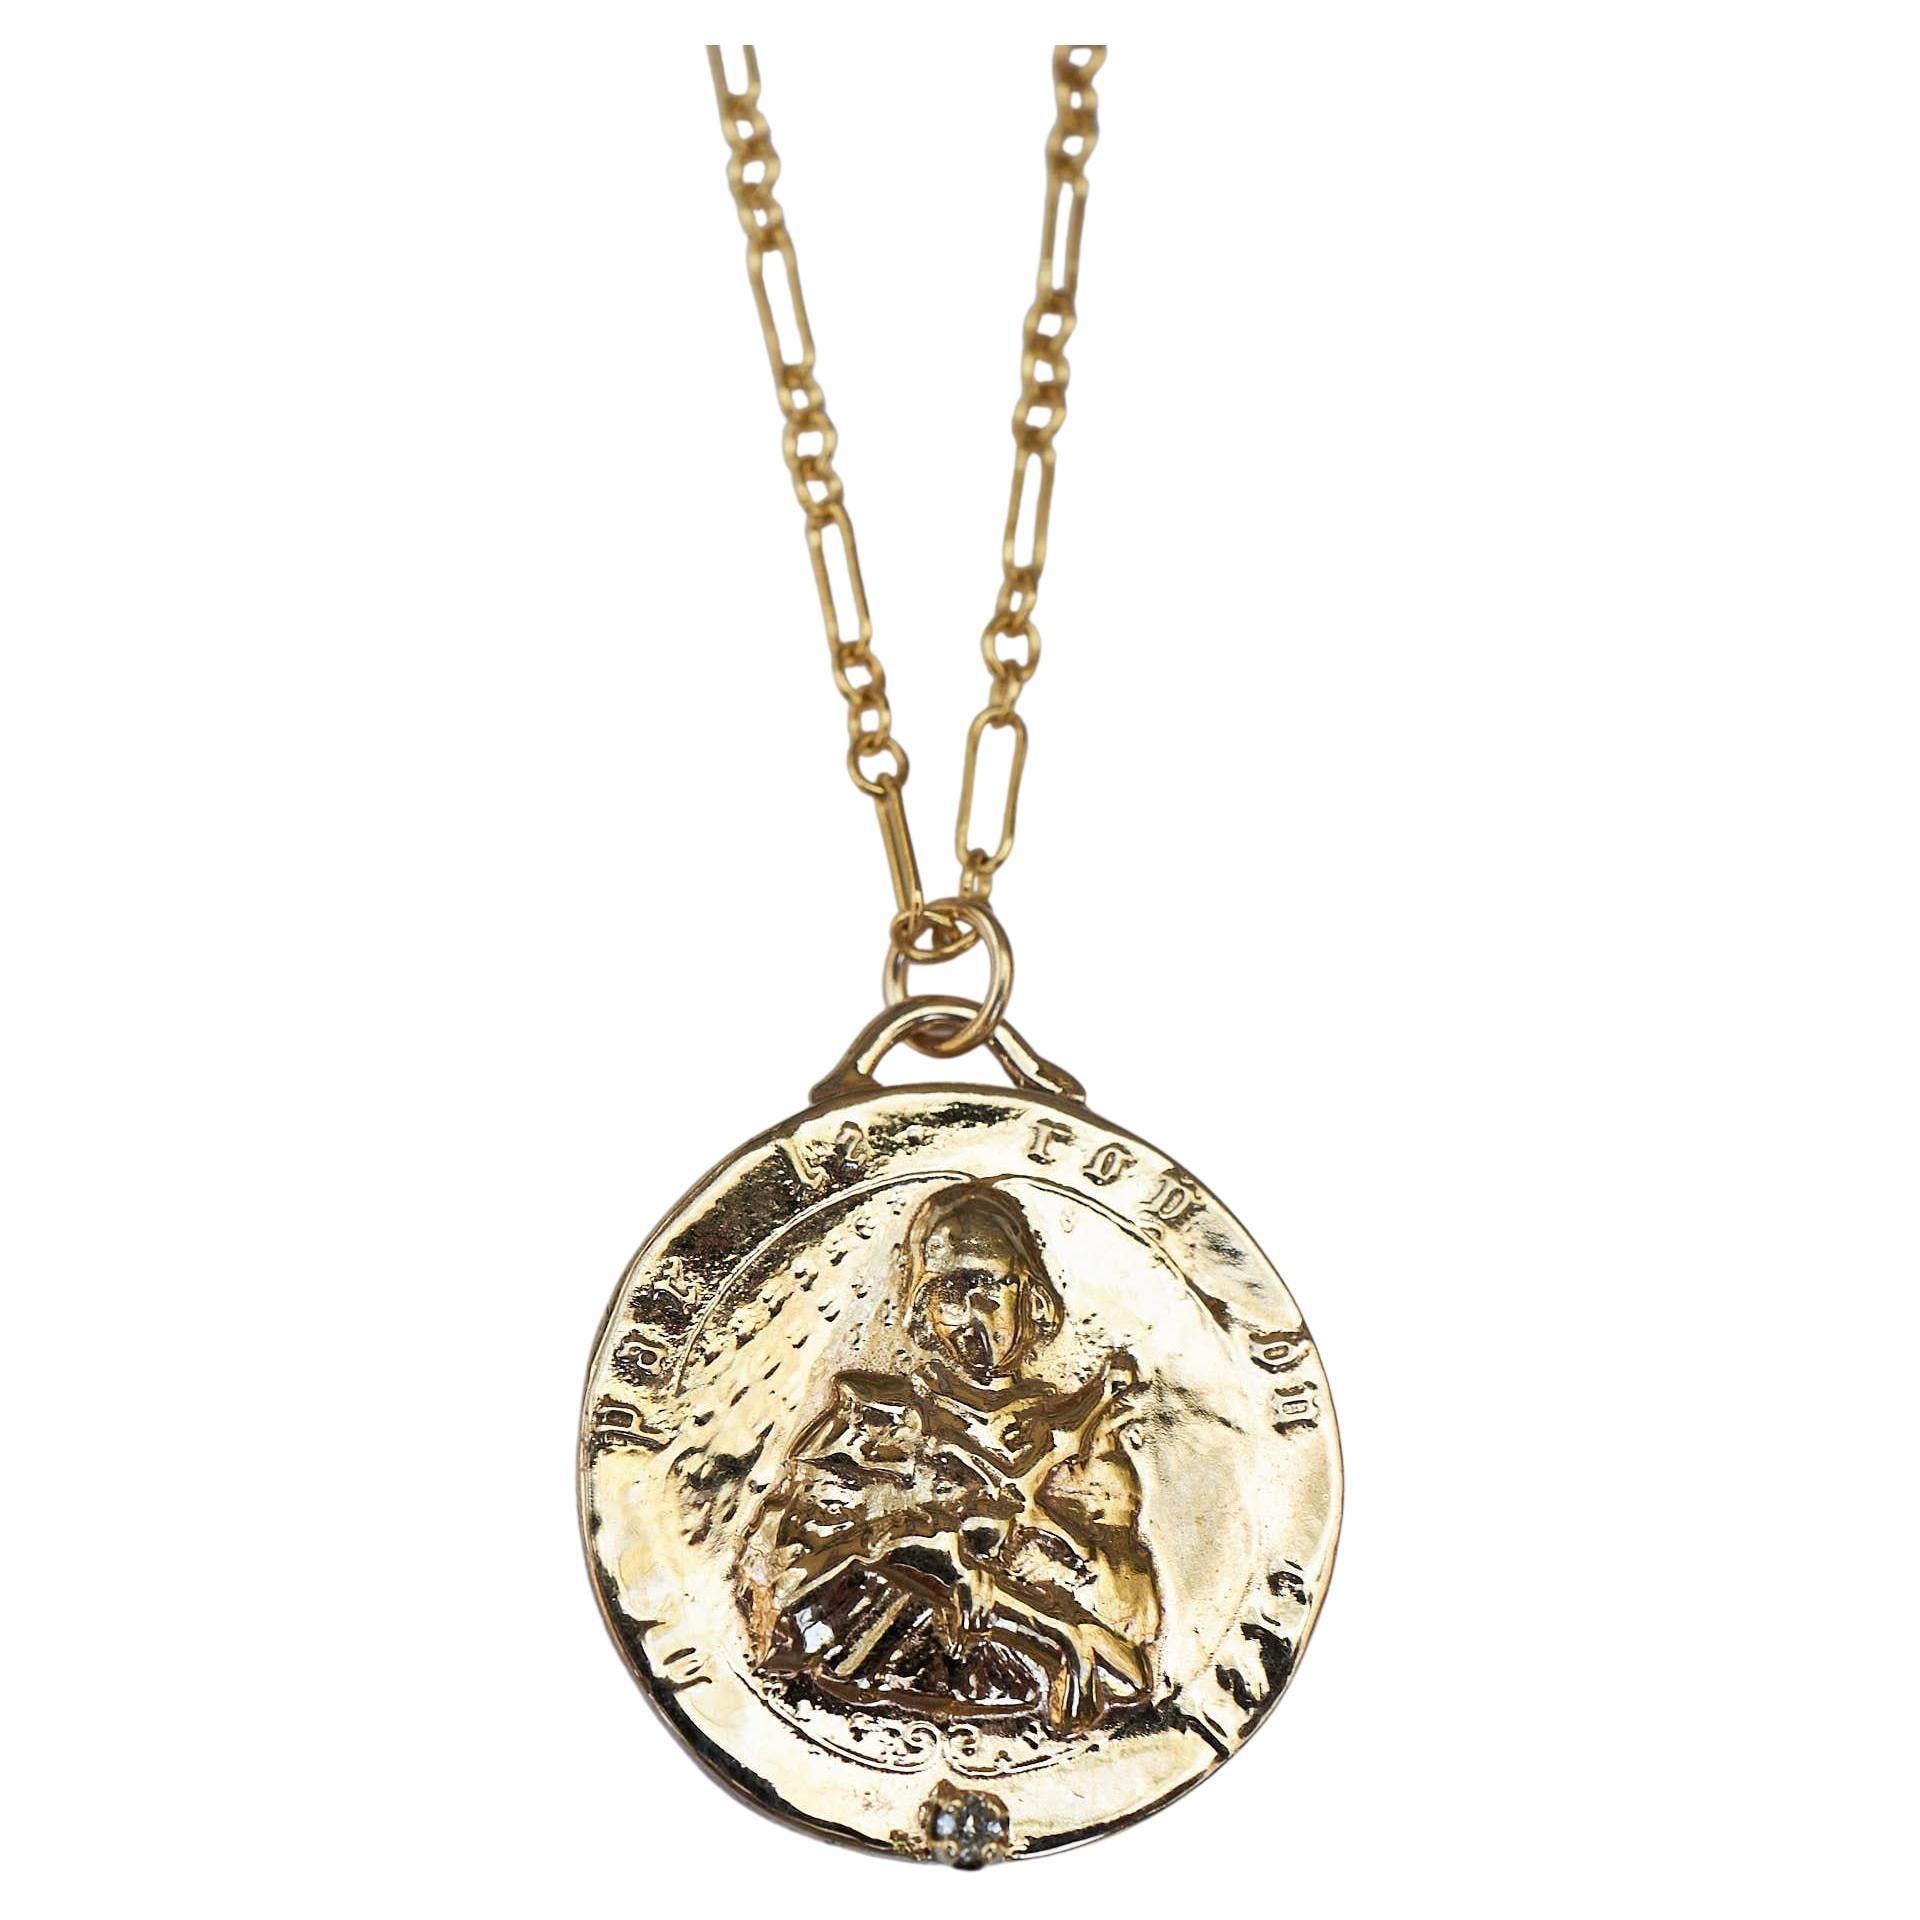 Chaîne collier Joan of Arc avec chaîne en diamant blanc pièce de monnaie médaillon J Dauphin